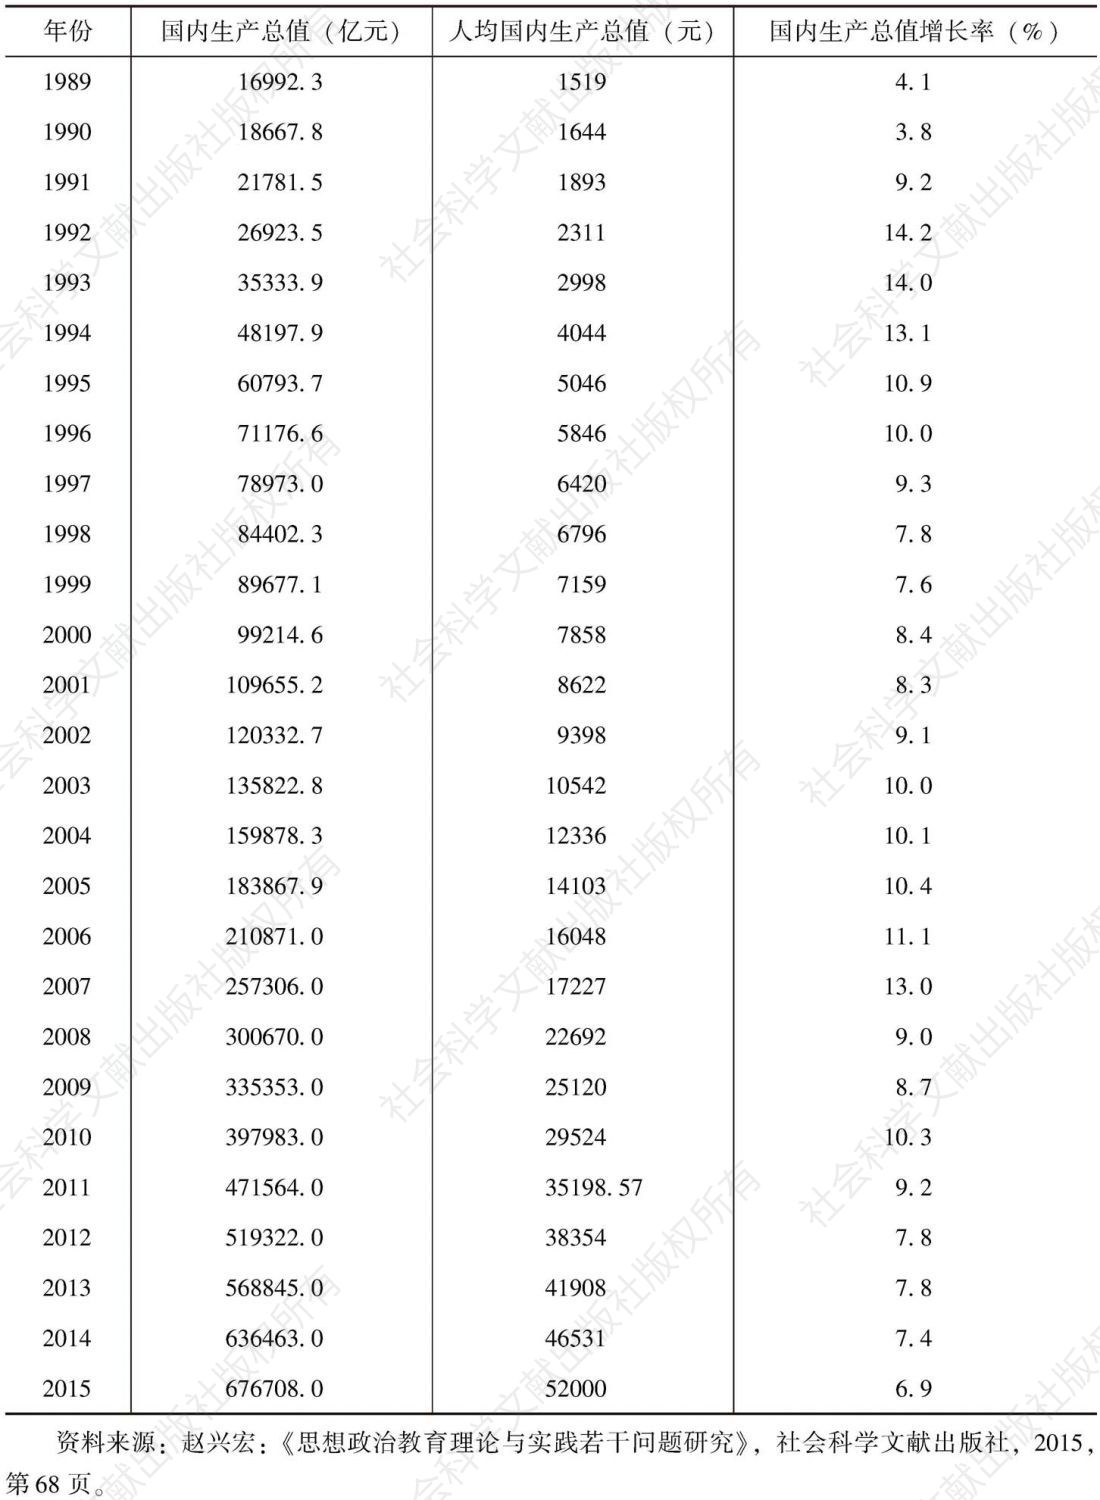 表2-1 1978年以来中国国内生产总值、人均国内生产总值和国内生产总值增长率-续表